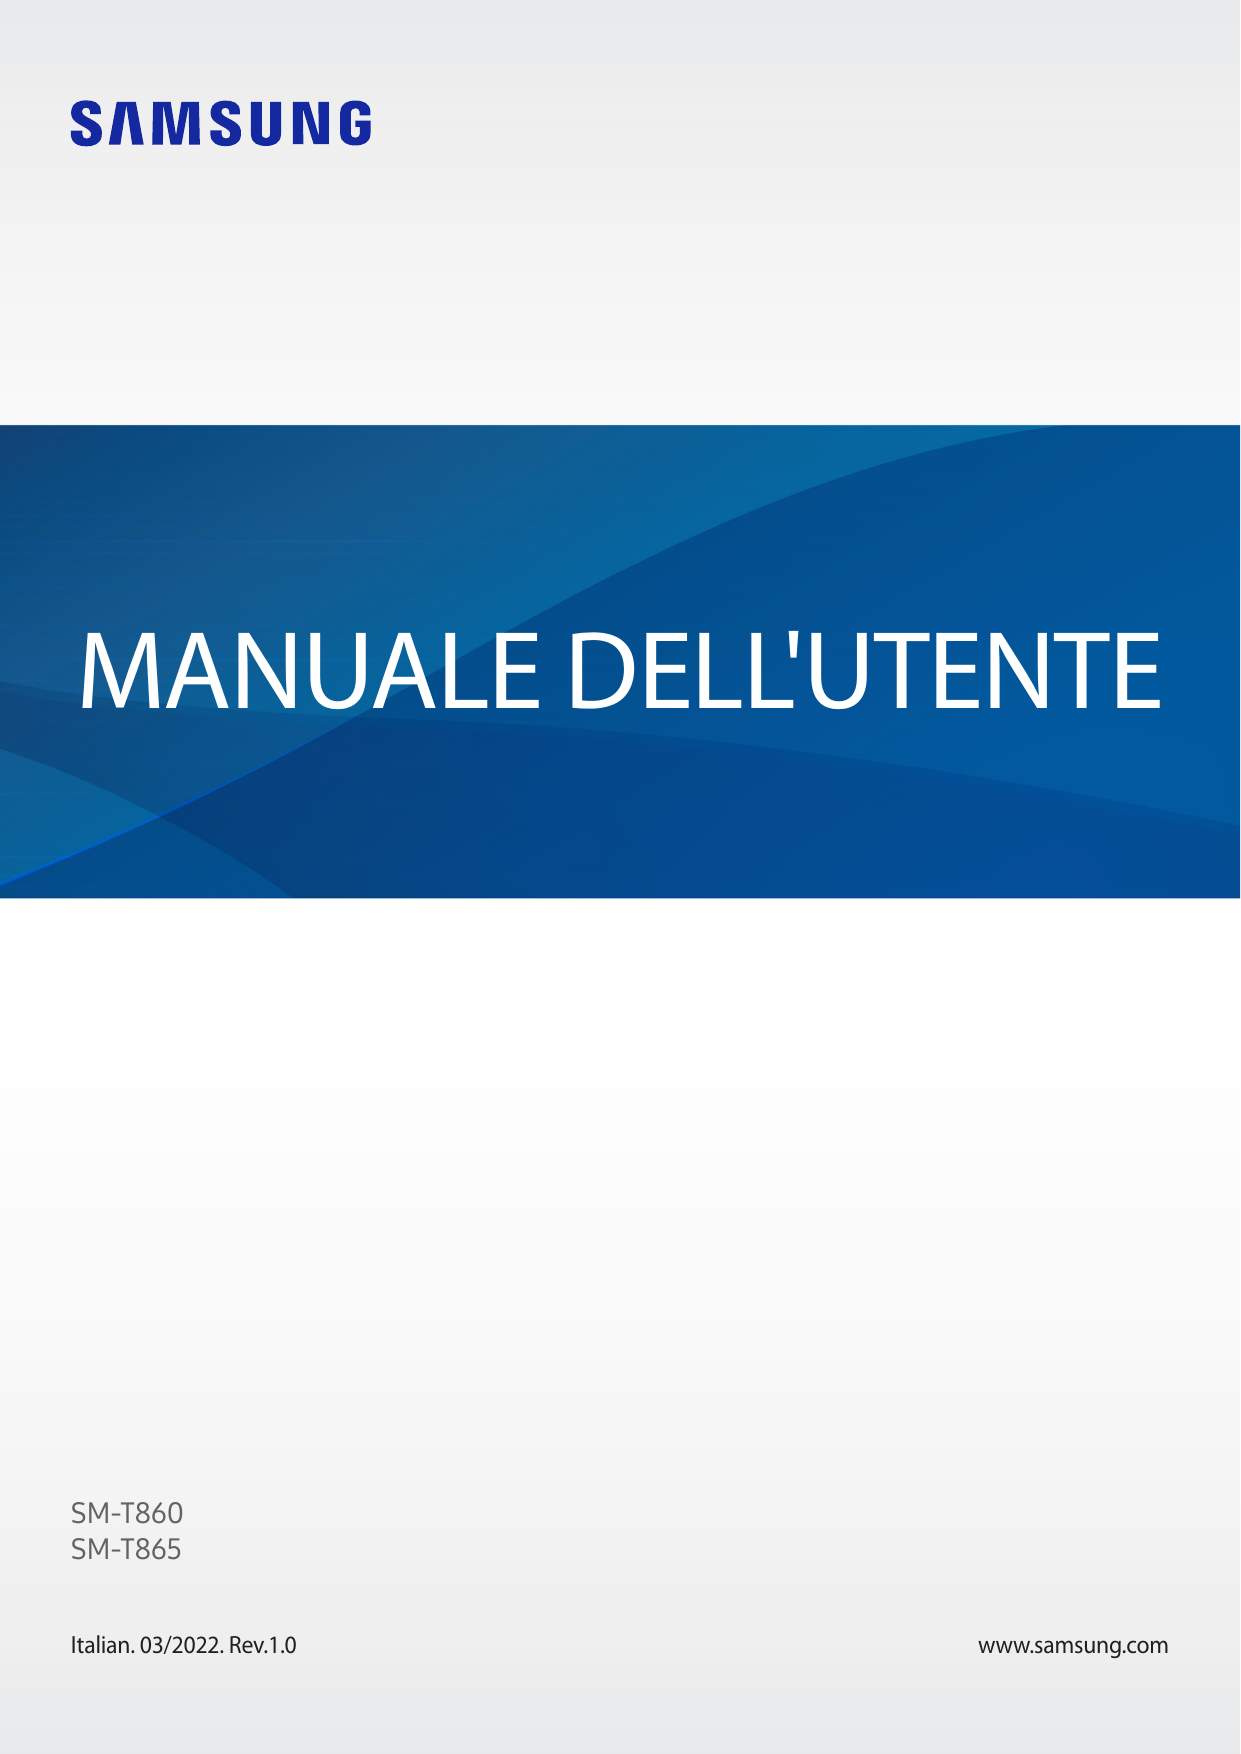 MANUALE DELL'UTENTESM-T860SM-T865Italian. 03/2022. Rev.1.0www.samsung.com